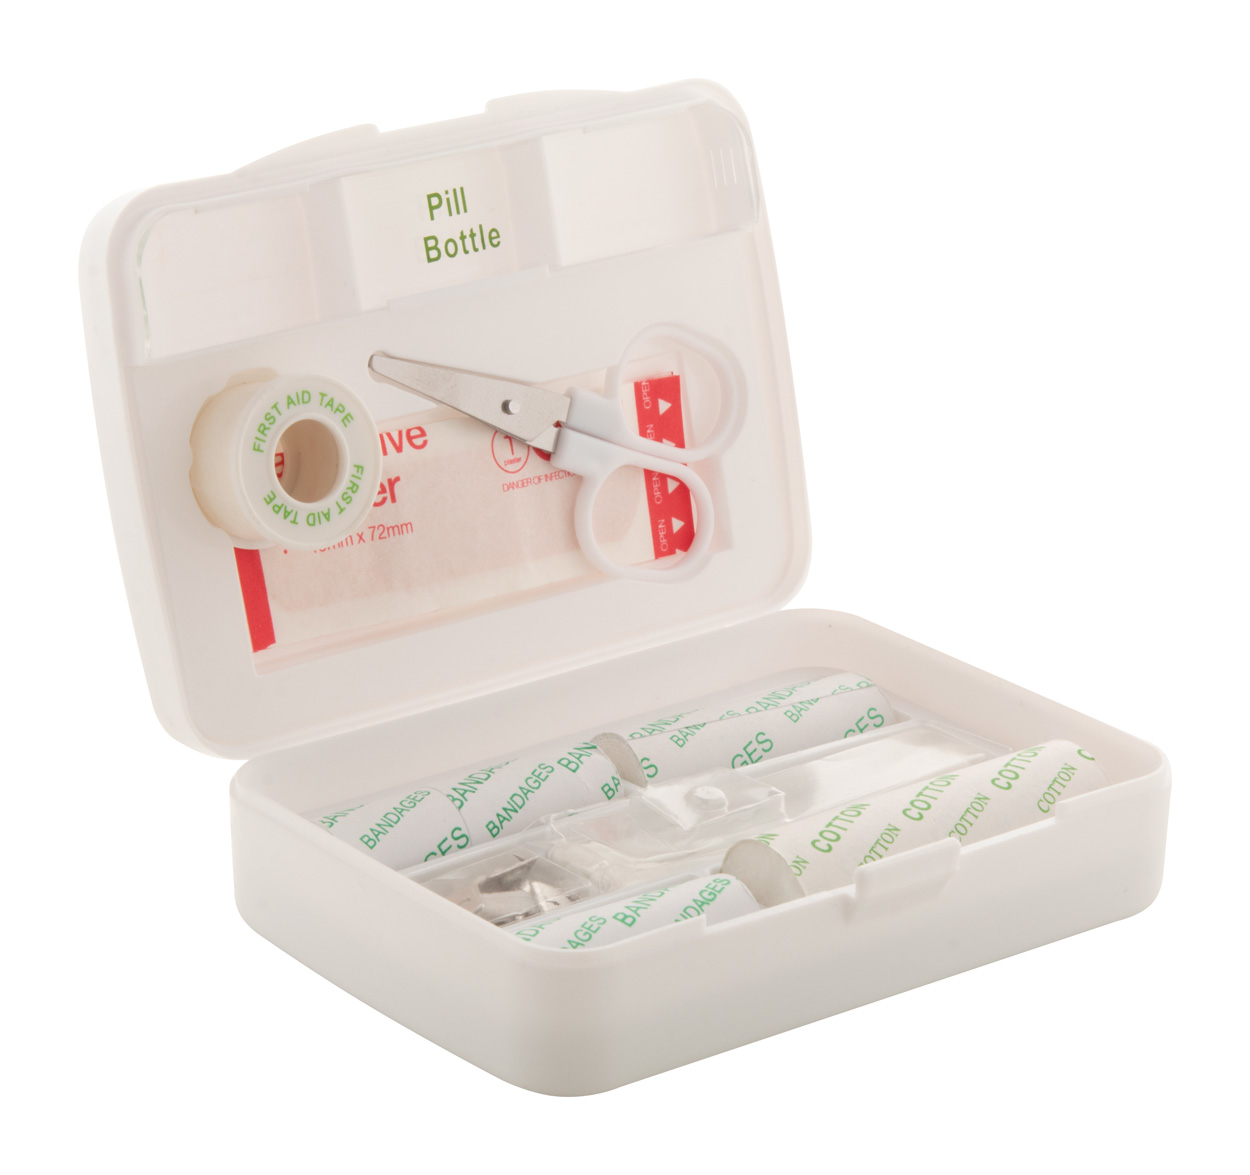 Foldoc first aid kit